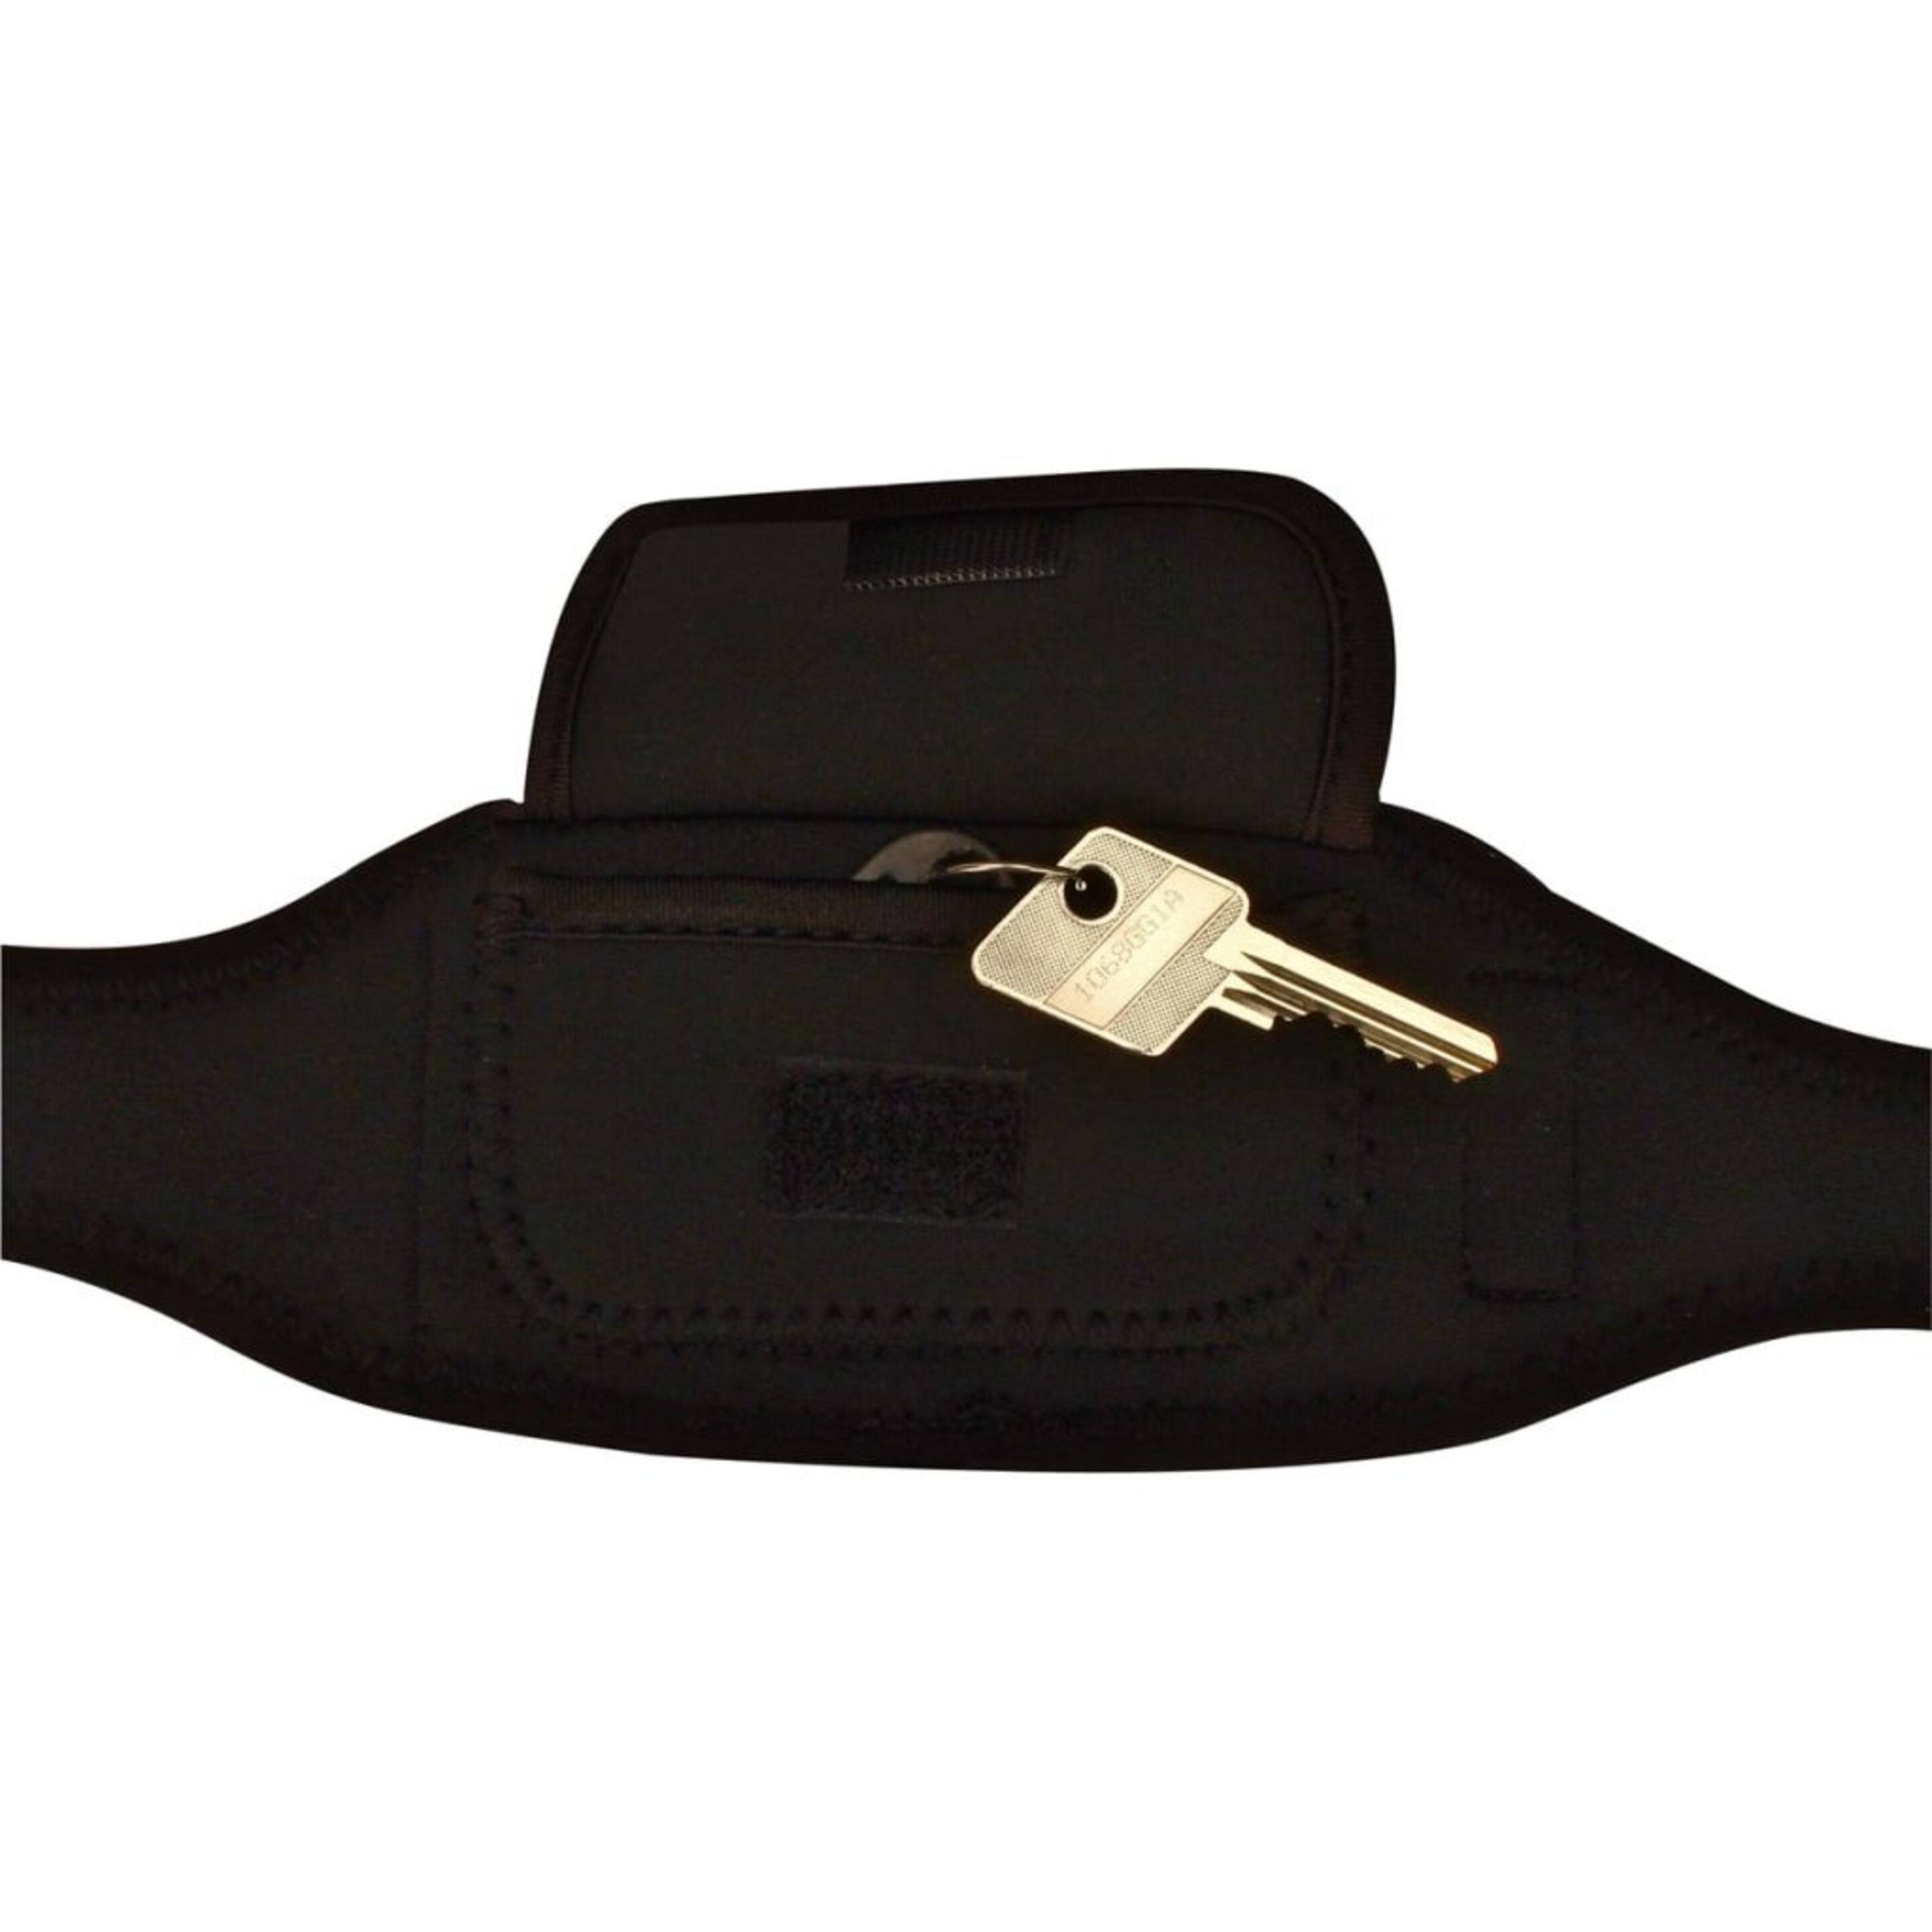 Avento Cinturón Deportivo Para Smartphone Negro 21ou-zwz-uni